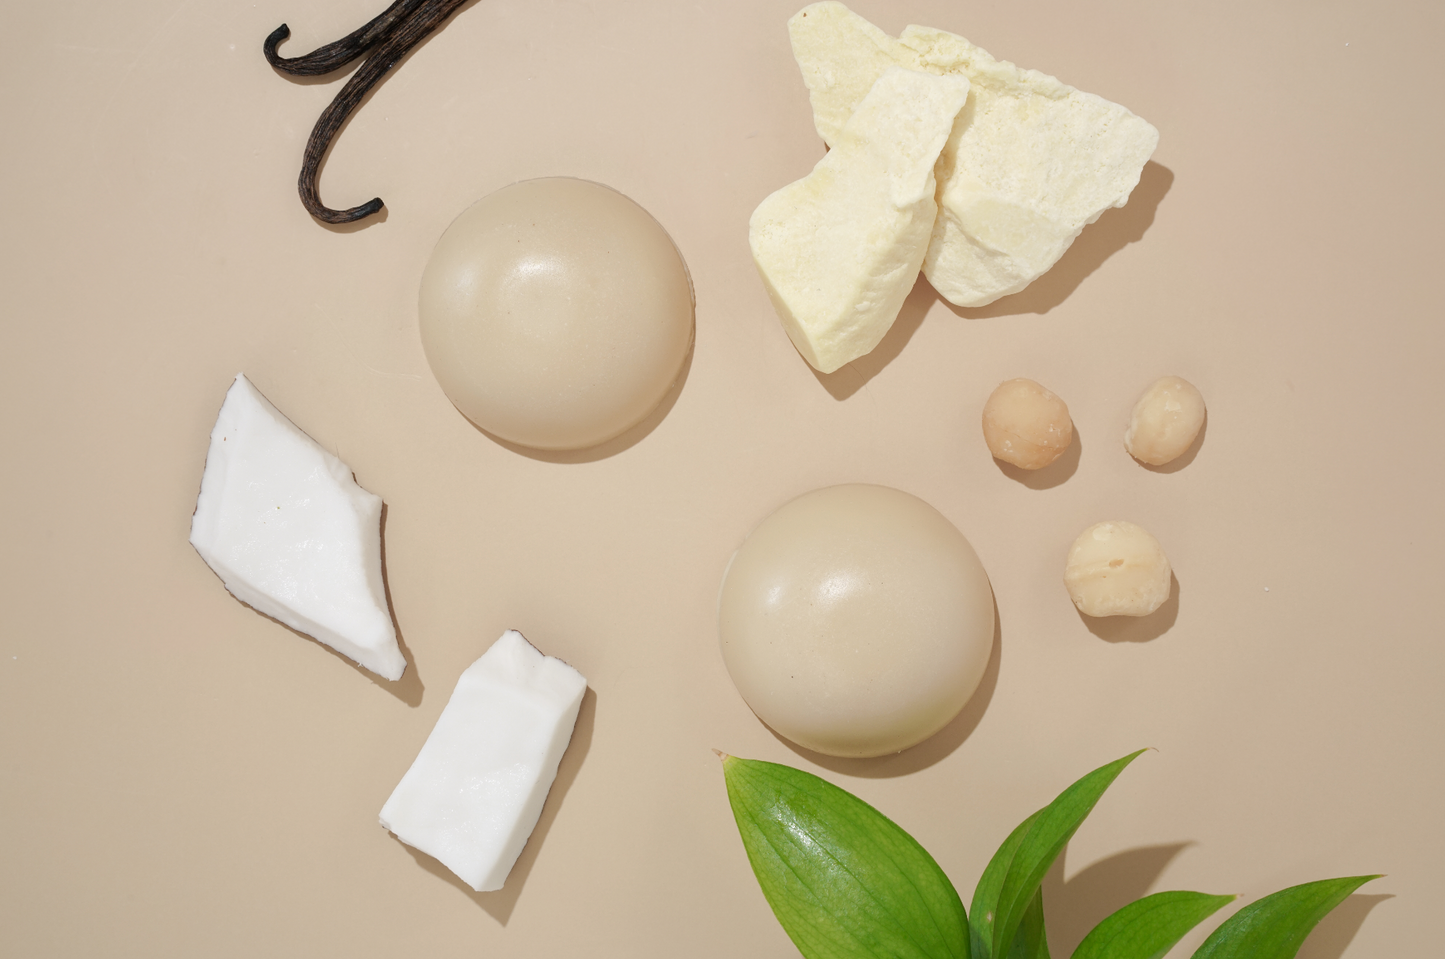 WHITE LOTUS - Limpiadora facial calmante de aceite de nuez de Macadamia, marula y absoluto de loto blanco